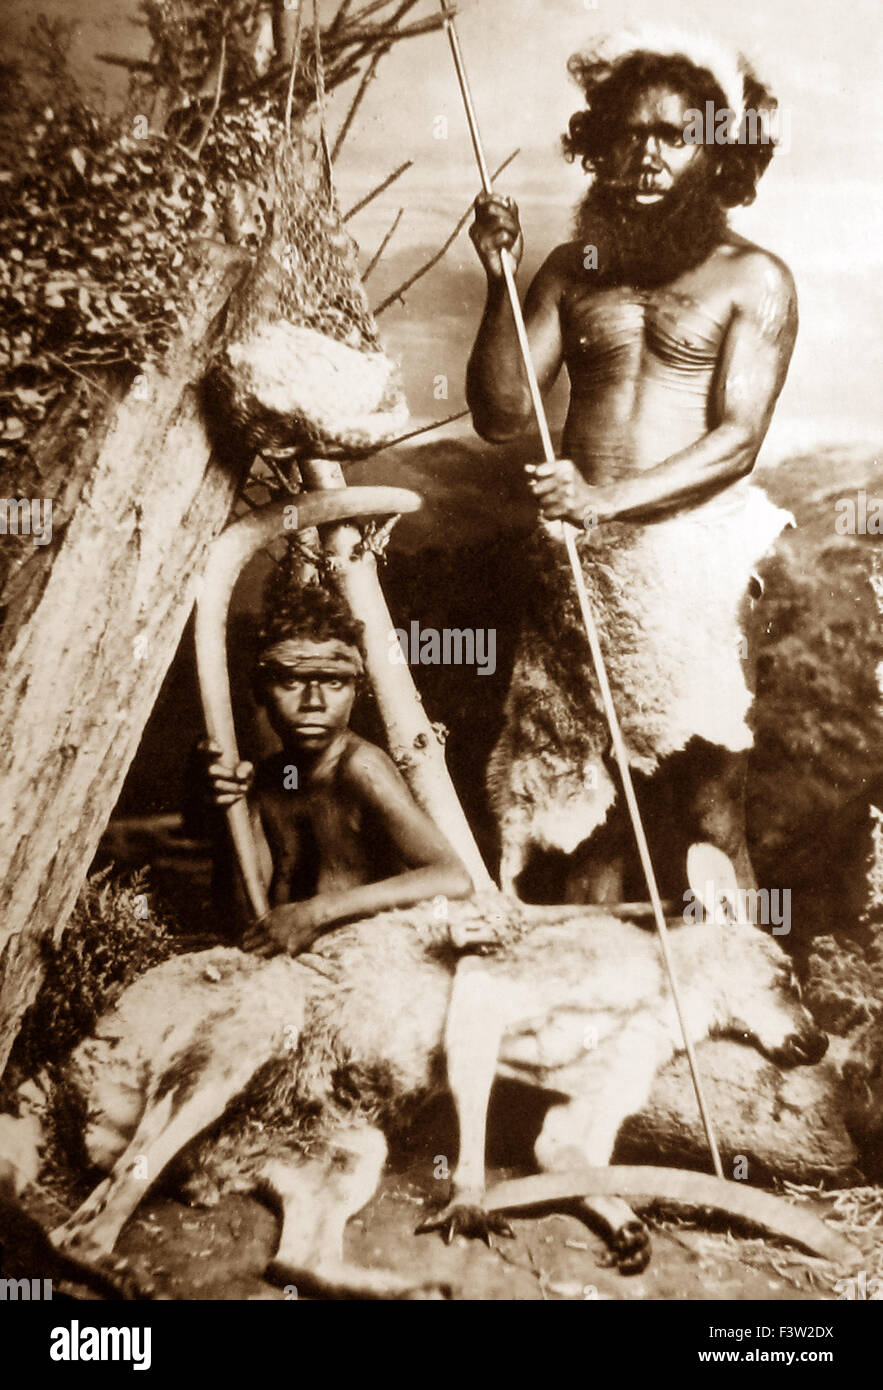 Retrato de estudio de los aborígenes australianos - período Victoriano Foto de stock